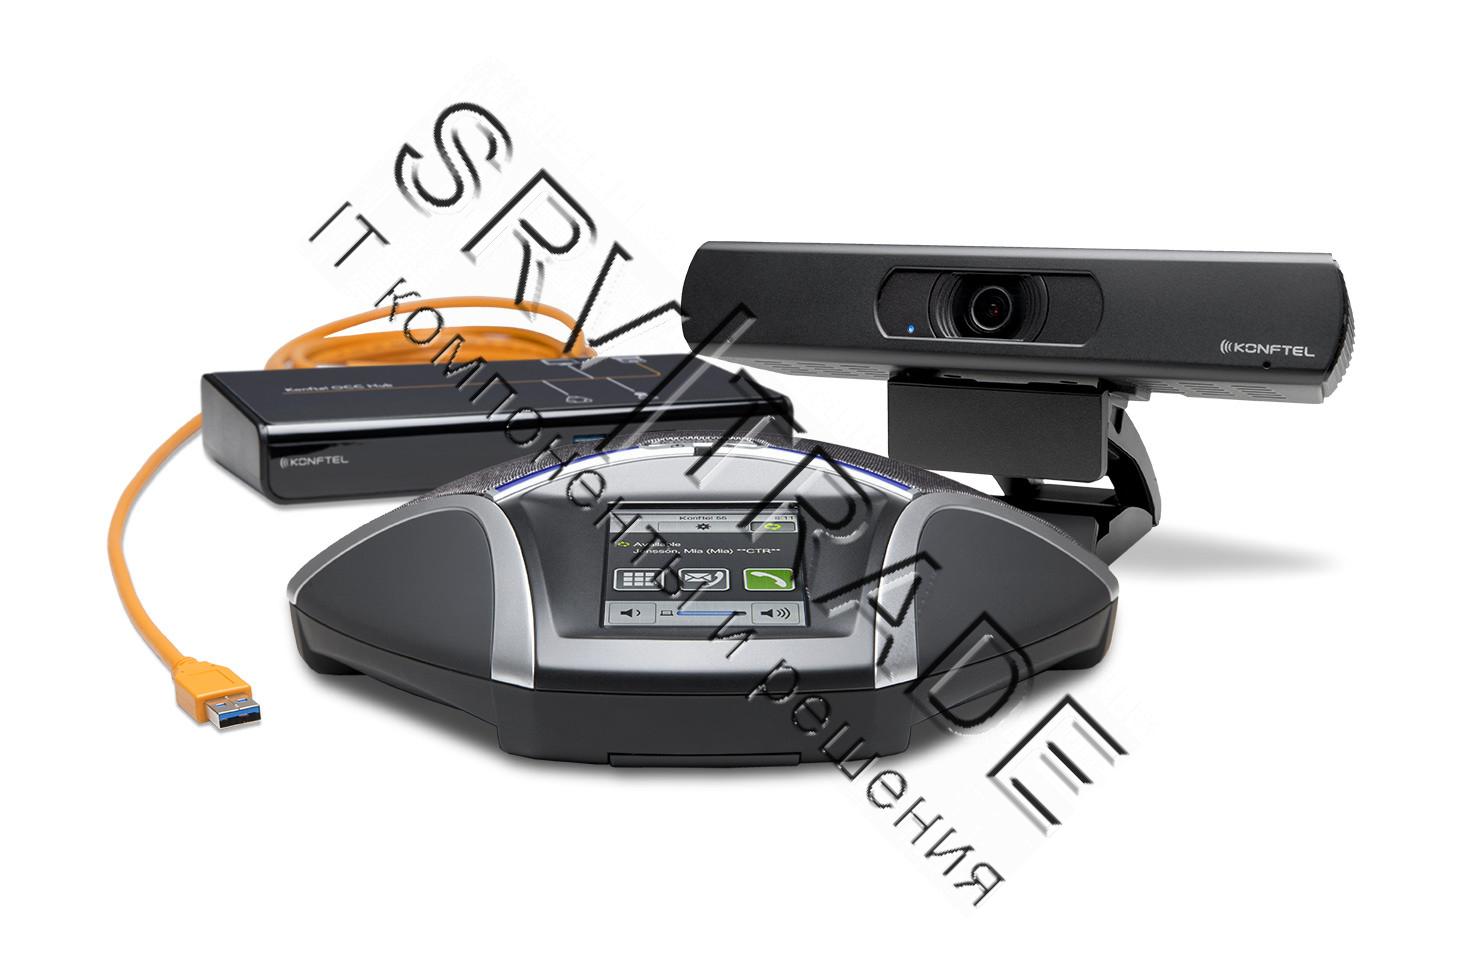 Комплект для видеоконференцсвязи Konftel C50300IPx (300IPx + Cam50 + HUB), Konftel KT-C50300IPx